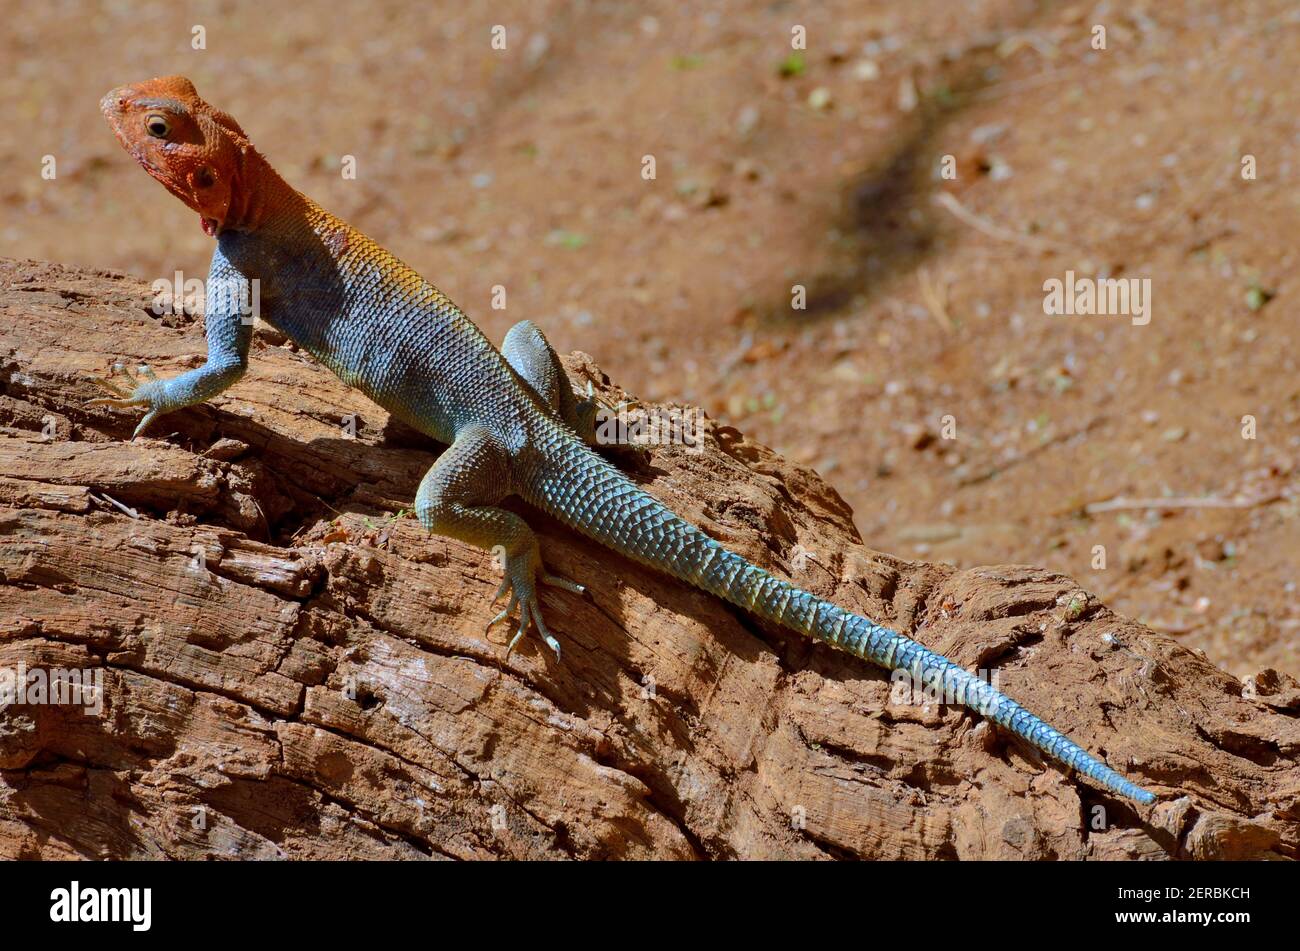 Agama Lizard - Tsavo est - Kenya 2012 Banque D'Images